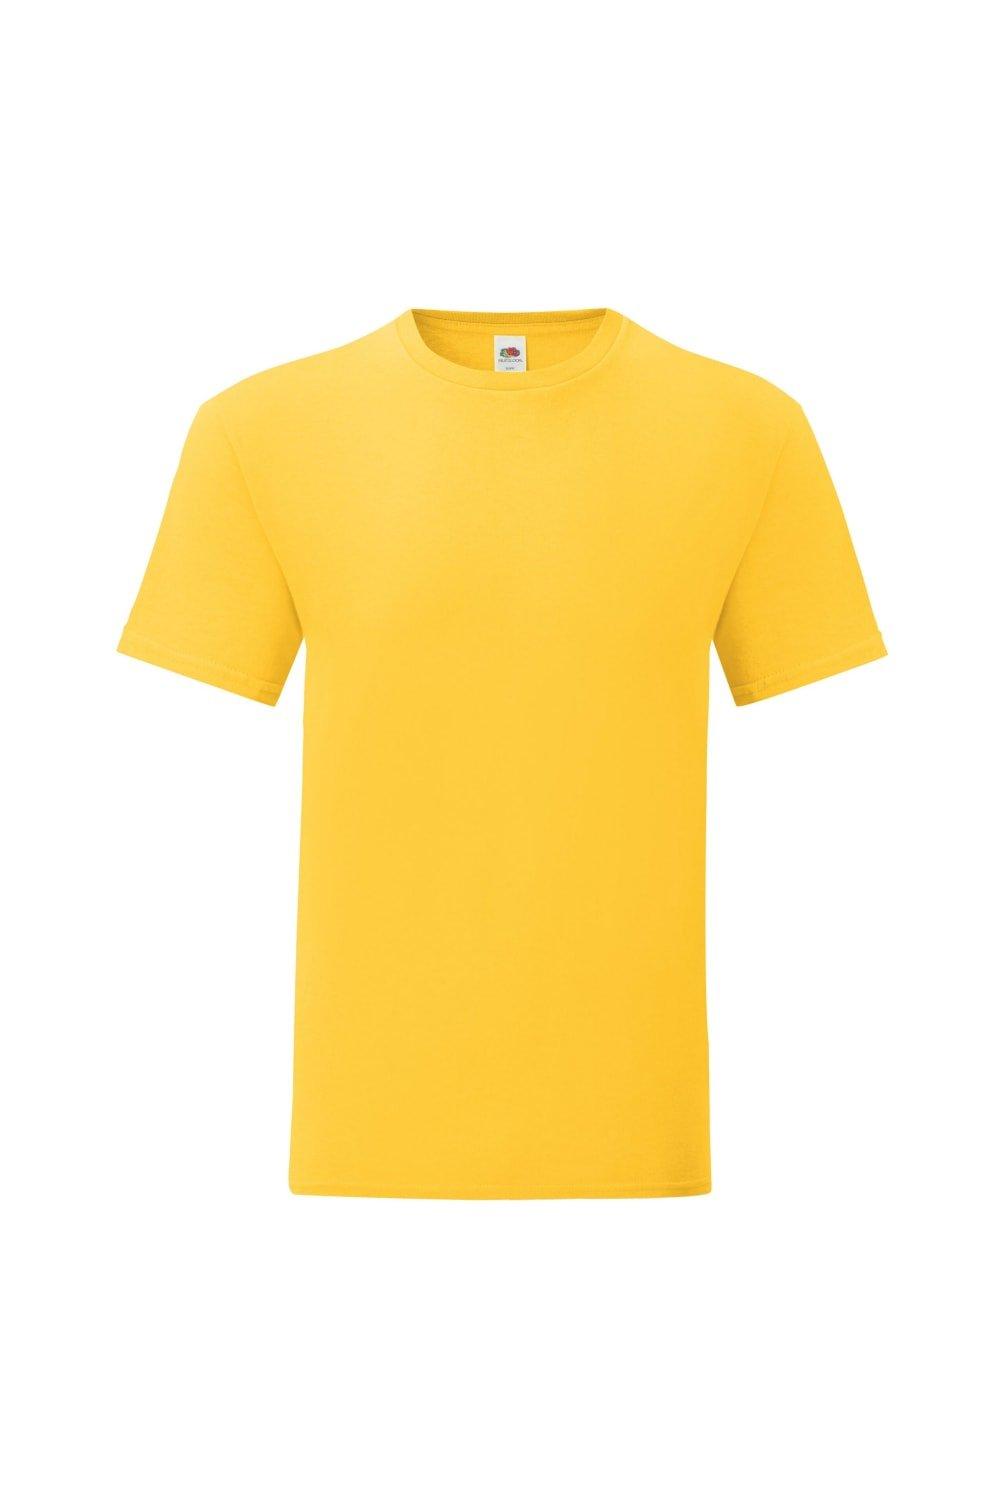 корпорация rockwell standard сертификат на 100 акций в 5 долларов каждая 1967 г Легендарная футболка премиум-класса из хлопка кольцевого прядения Fruit of the Loom, желтый